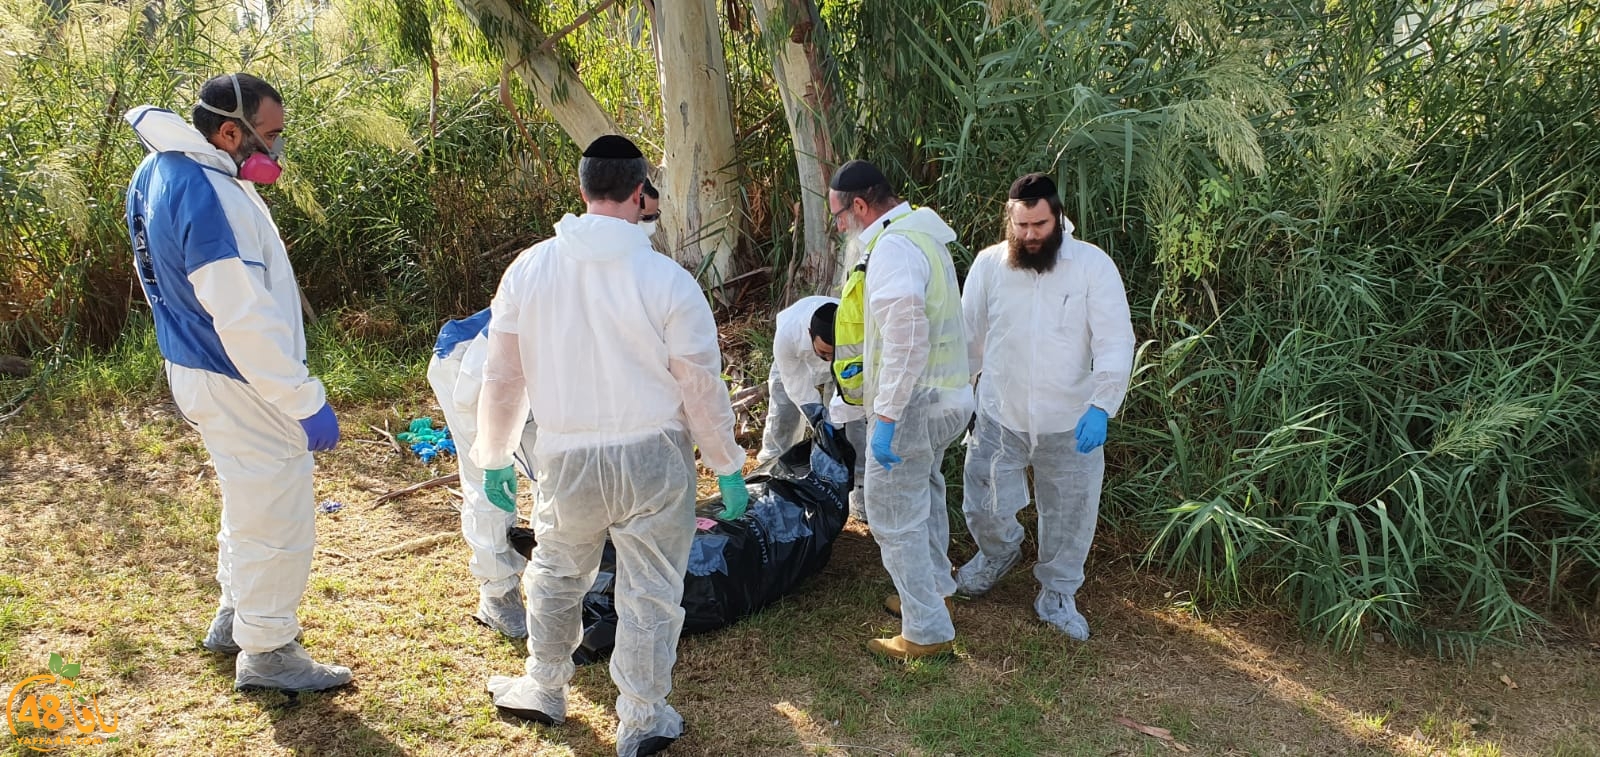  فيديو: العثور على جثة في متنزه باليركون العوجا قضاء يافا 